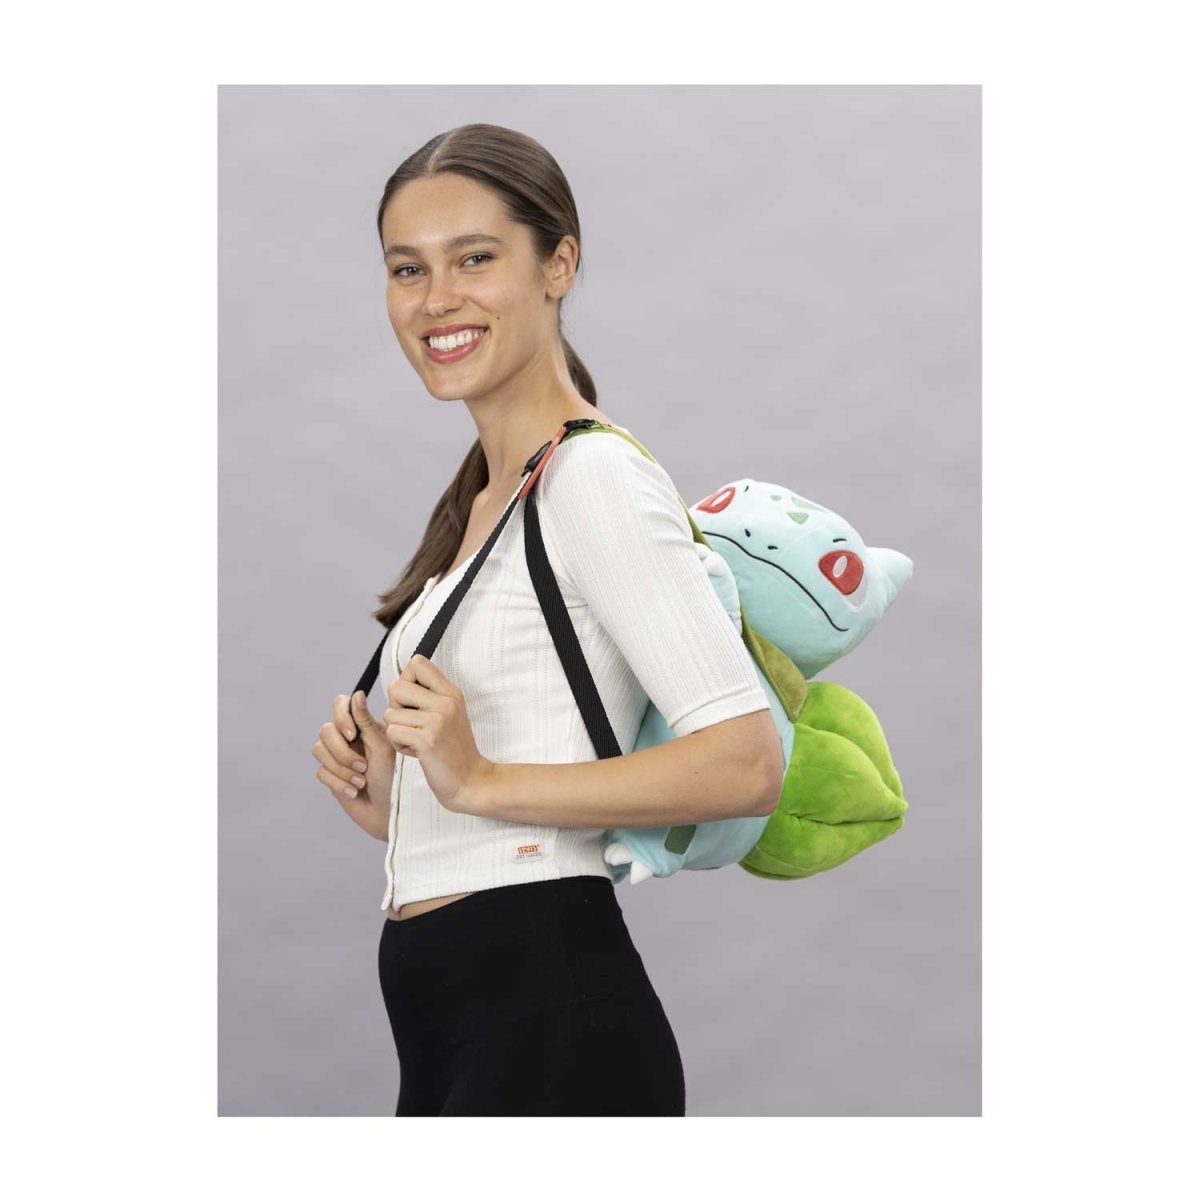 Pokemon - Bulbasaur Zip Around Wallet